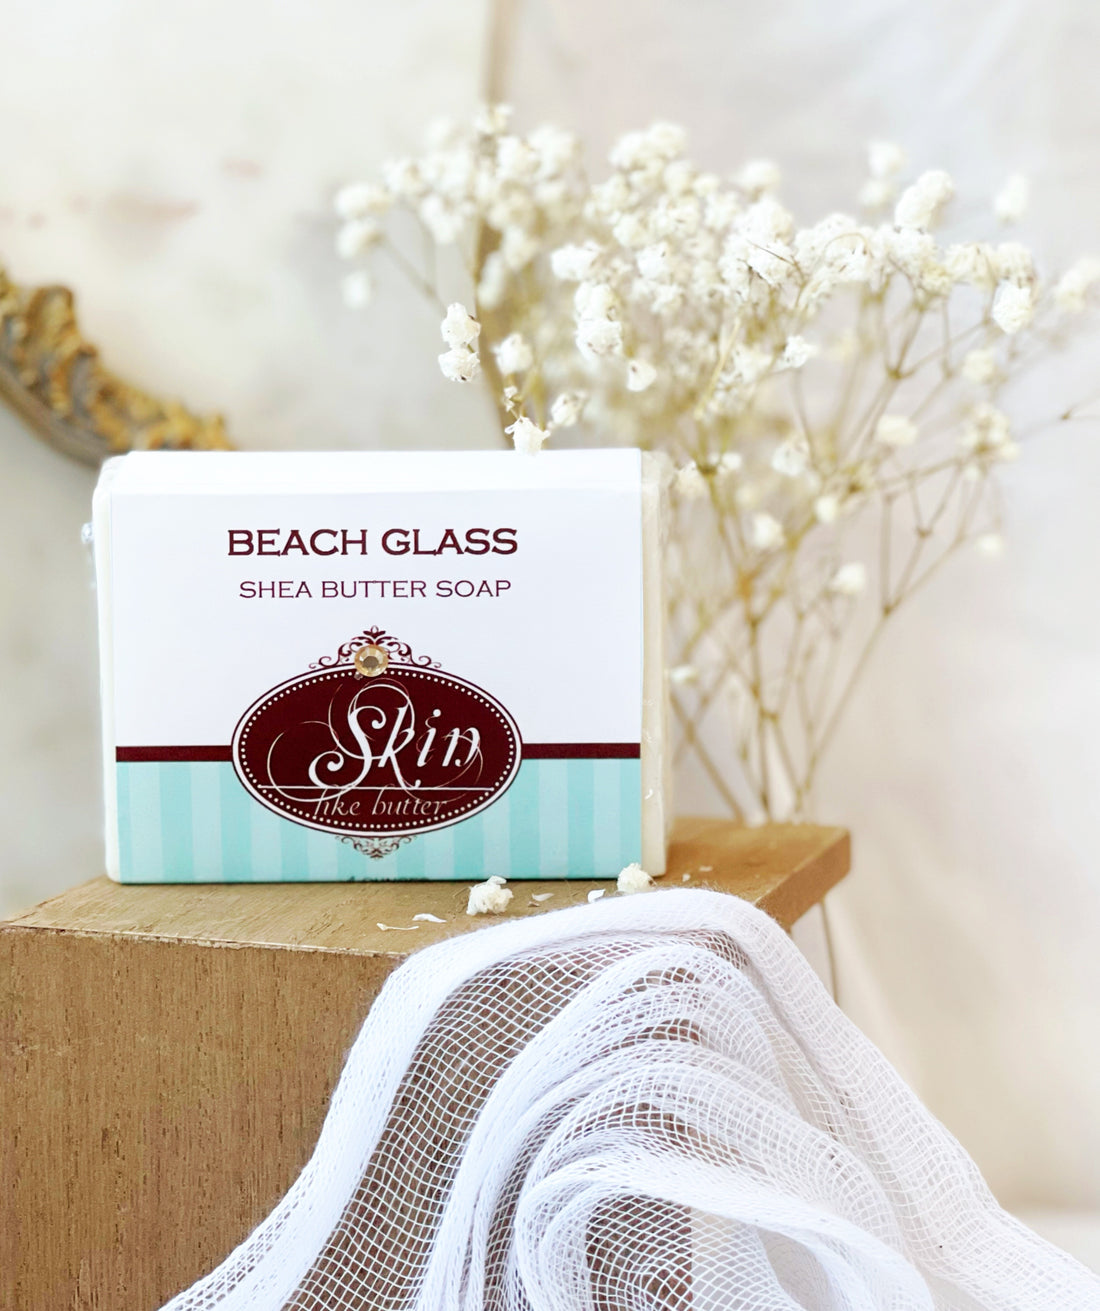 BEACH GLASS - Skin Like Butter - Shea Butter 4 oz Soap Bar